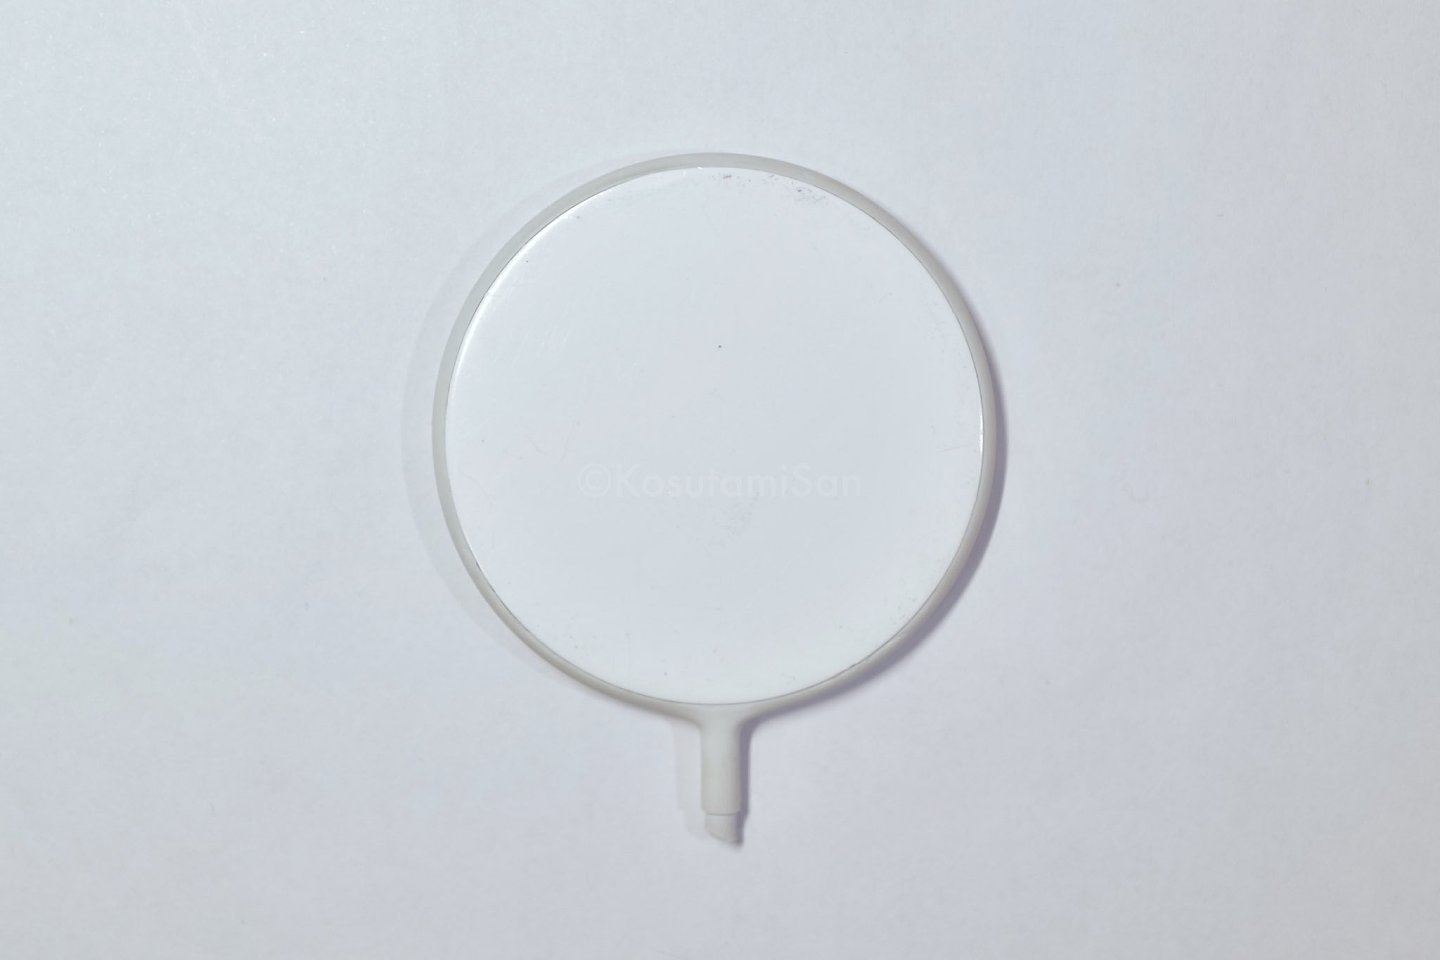 苹果 MagSafe 充电器早期原型曝光：橡胶外壳、Logo 醒目 - 2